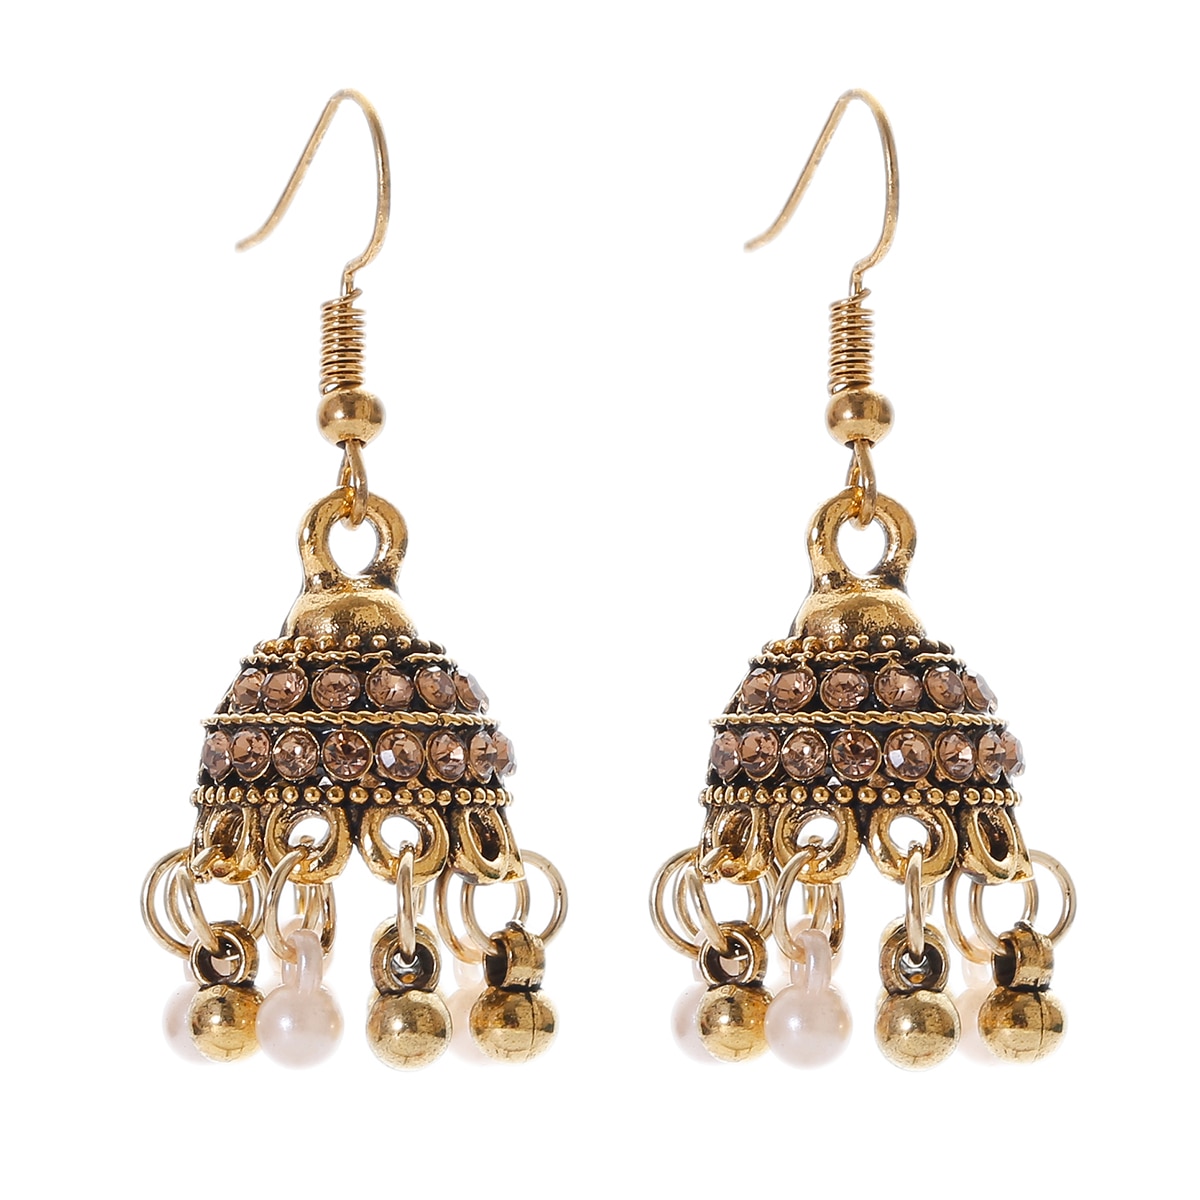 Retro-Classic-Small-Bell-CZ-Earrings-Women39s-Ethnic-Pearl-Tassel-Earrings-Piercing-Wedding-Jewelry--1005004294998889-6